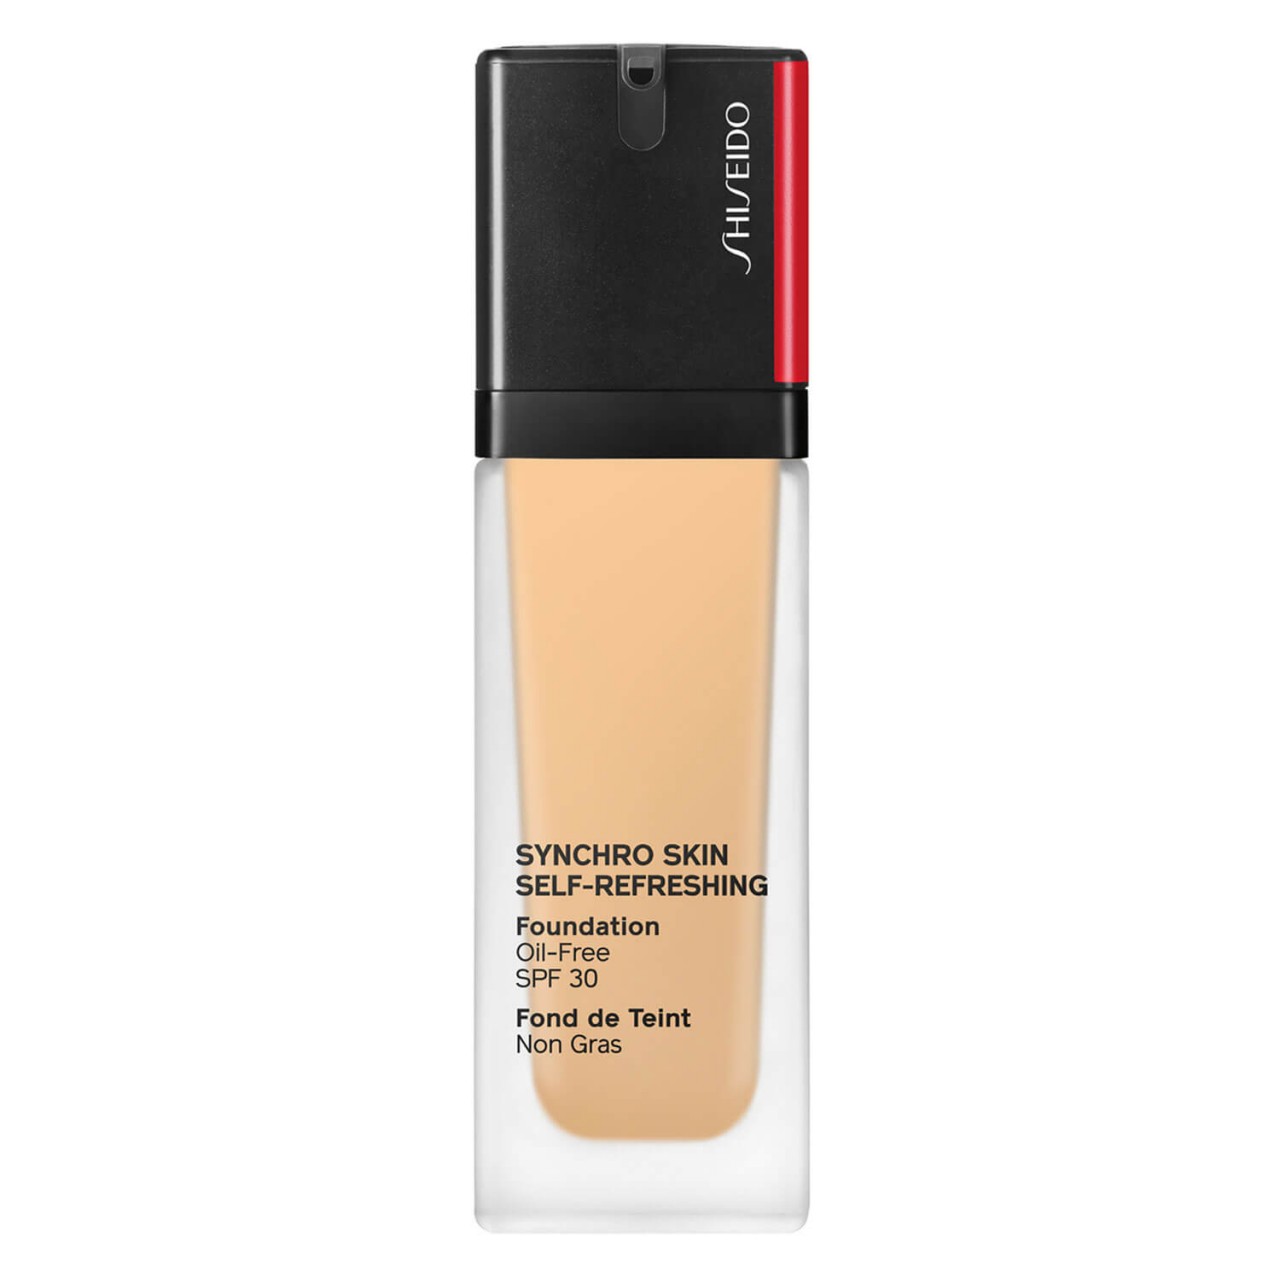 Synchro Skin Self-Refreshing - Foundation SPF 30 Alder 230 von Shiseido